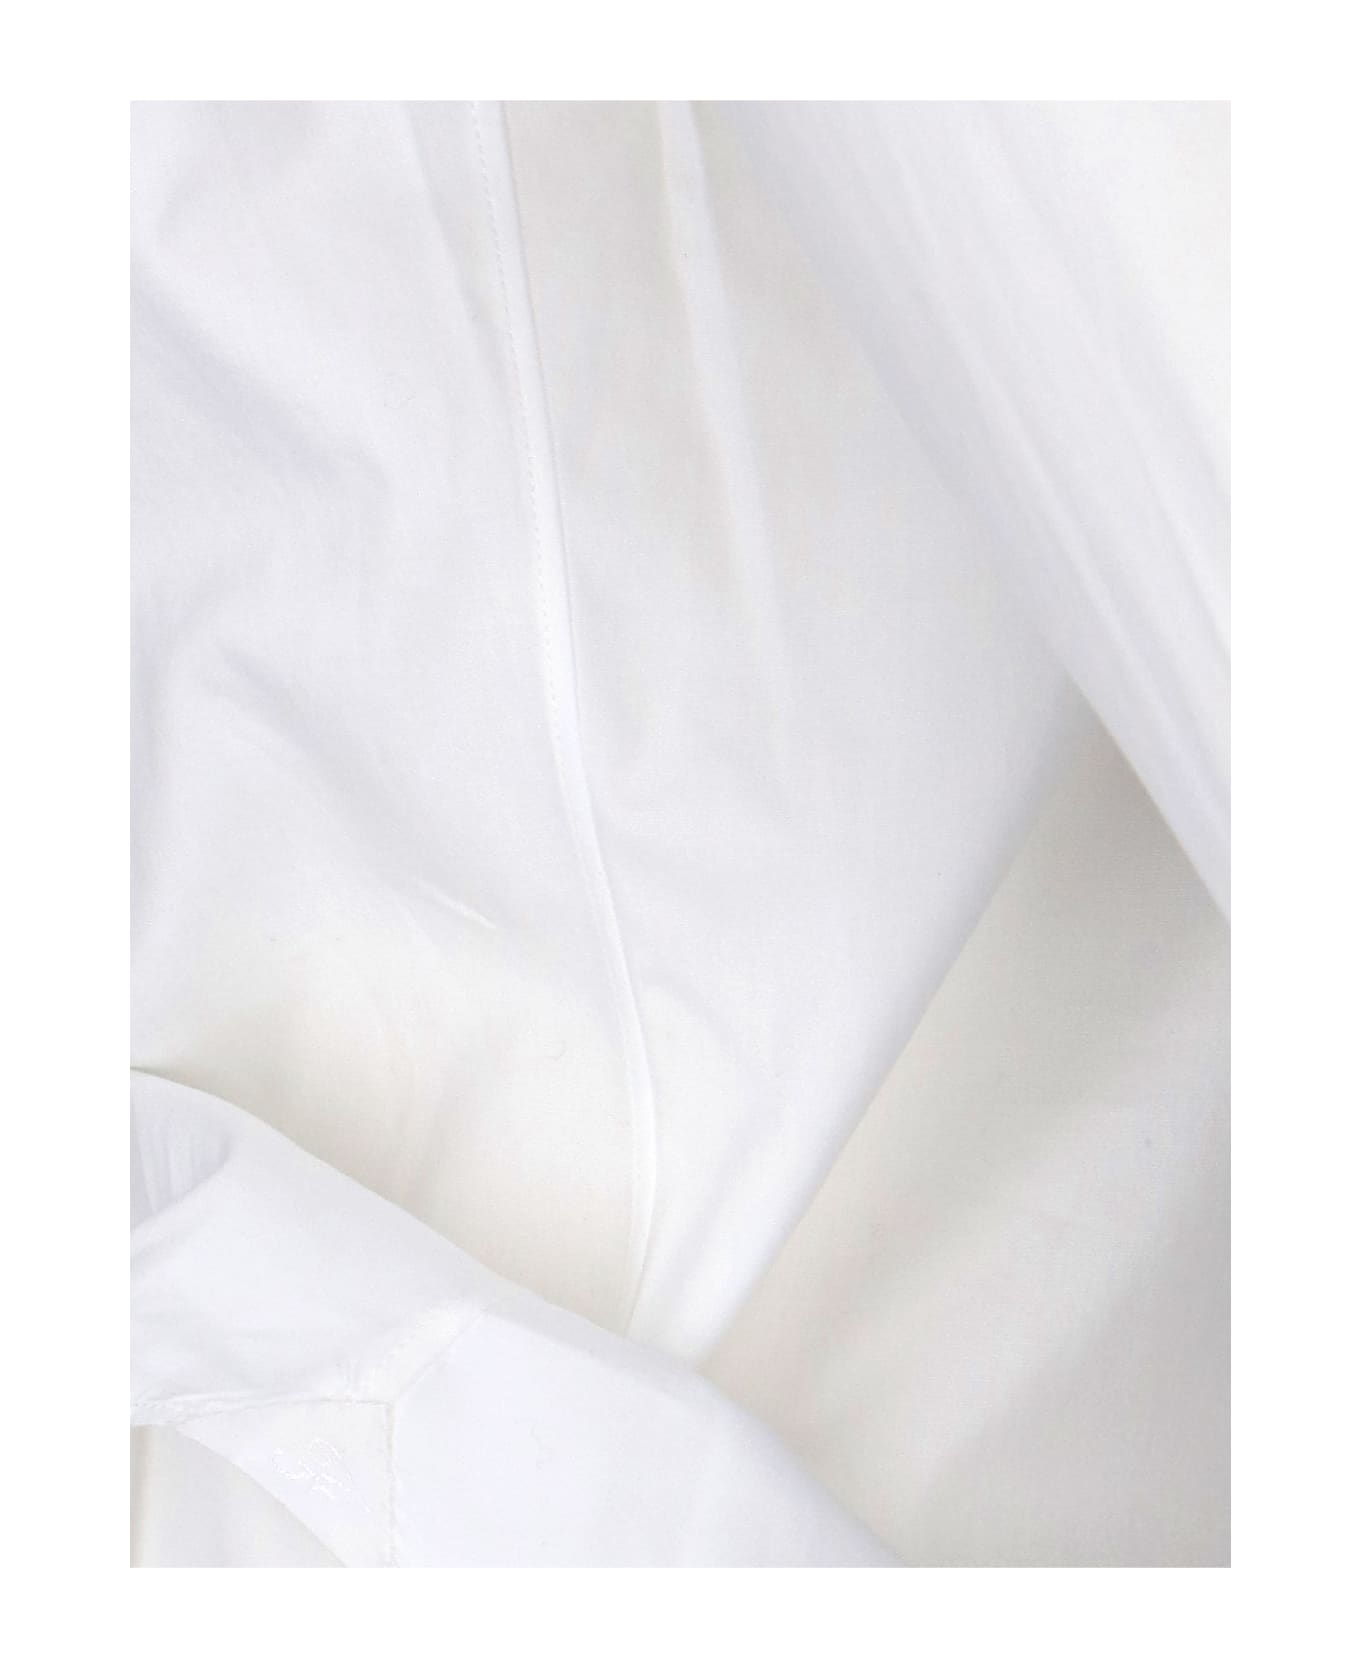 Finamore Classic Shirt - White シャツ